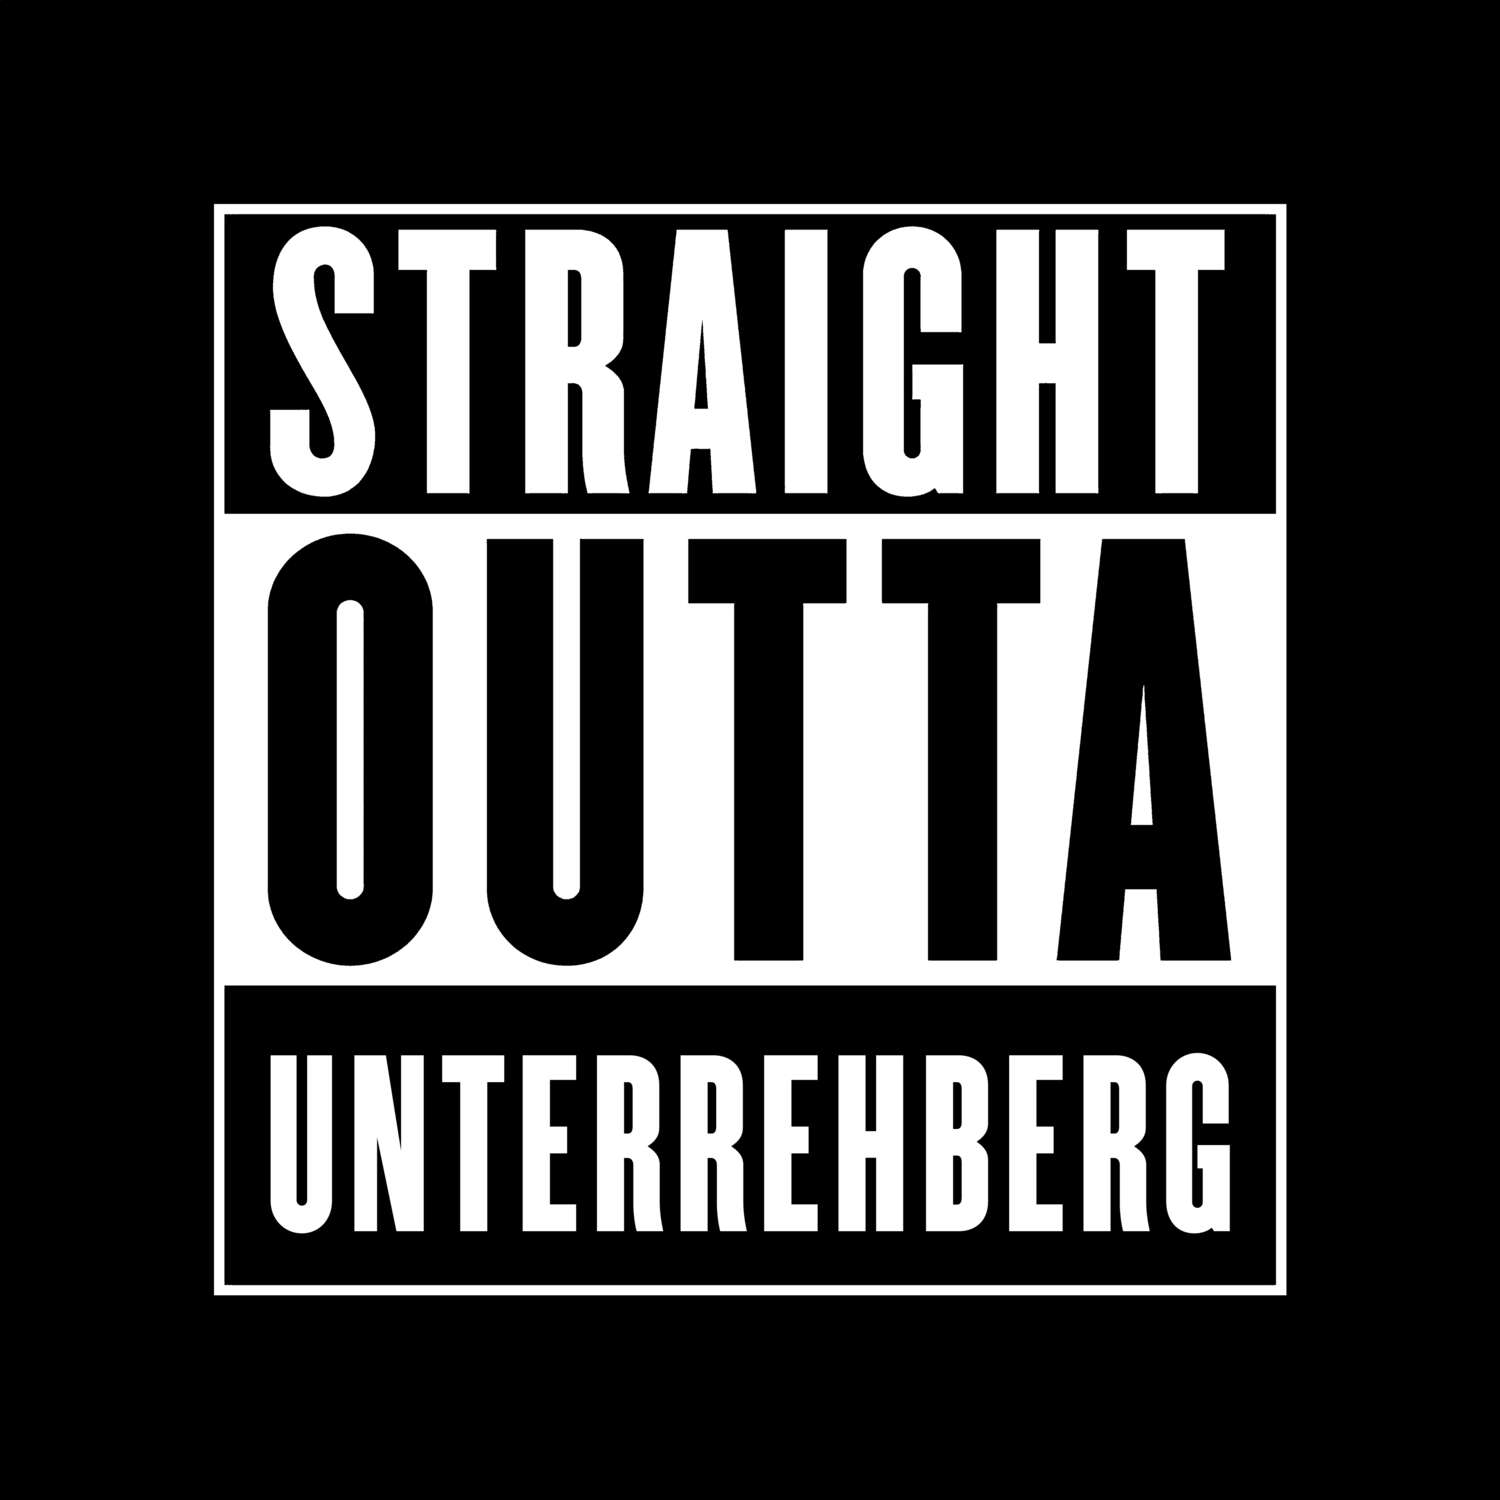 Unterrehberg T-Shirt »Straight Outta«